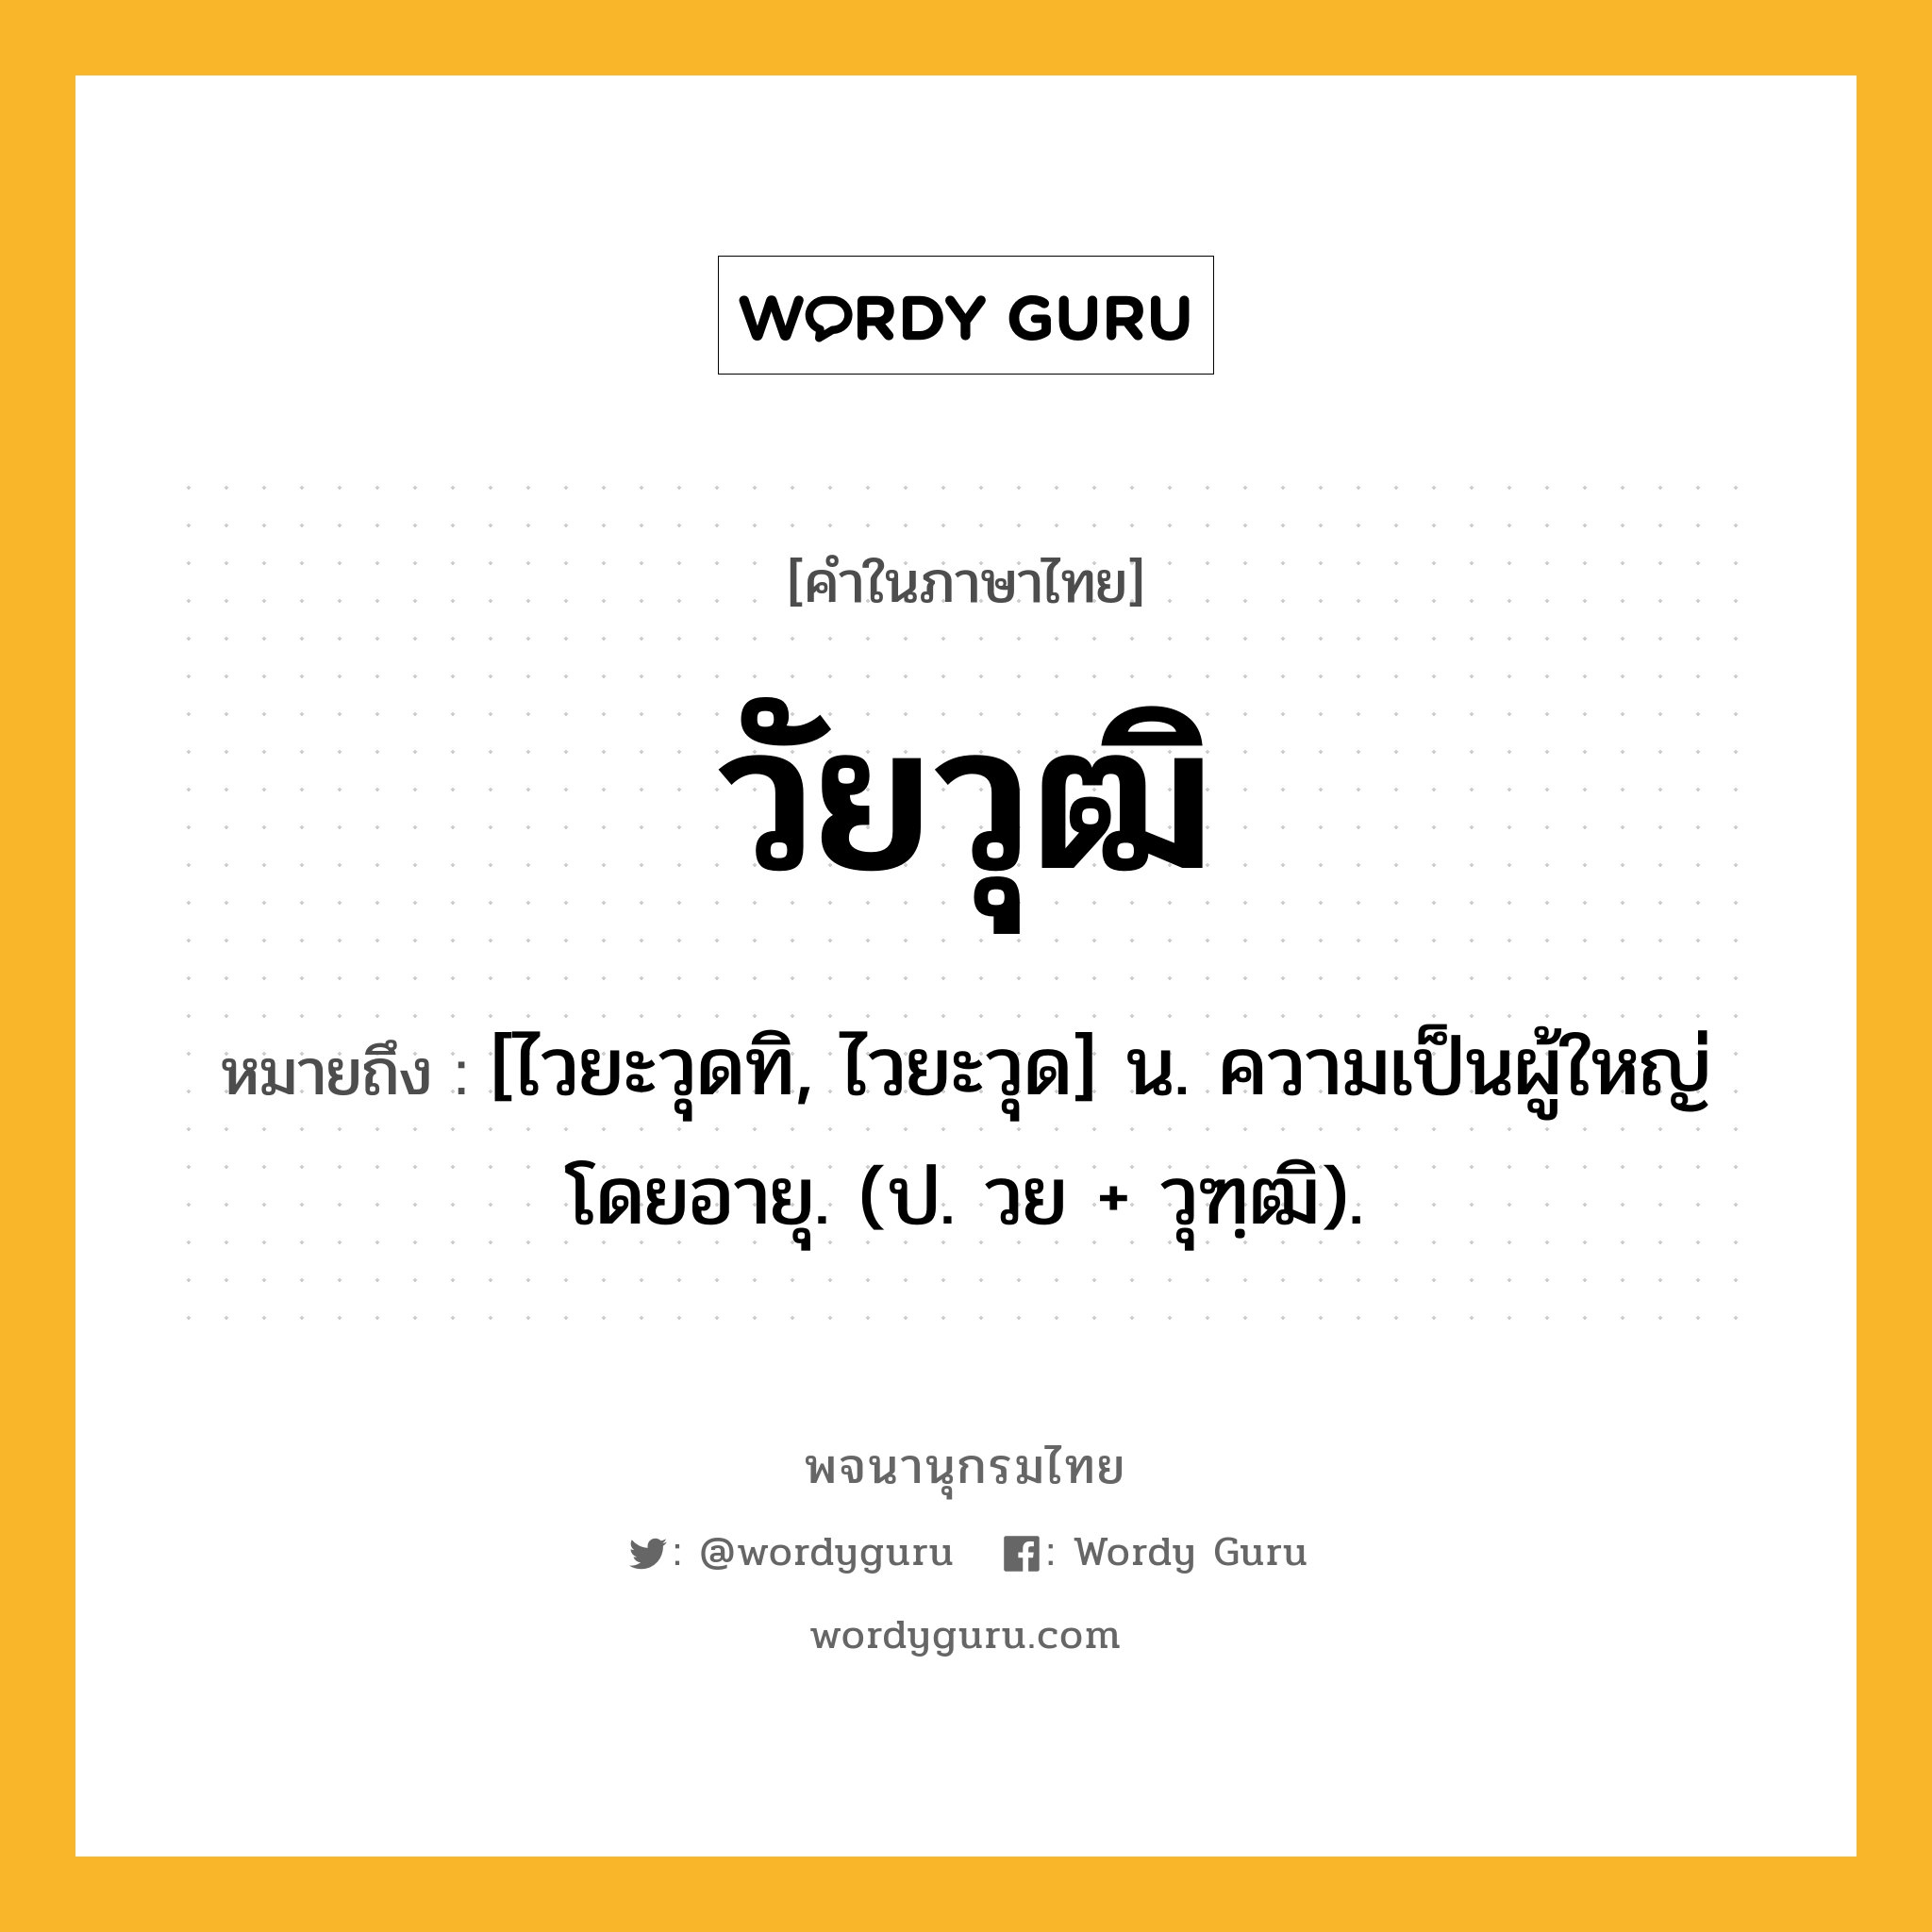 วัยวุฒิ ความหมาย หมายถึงอะไร?, คำในภาษาไทย วัยวุฒิ หมายถึง [ไวยะวุดทิ, ไวยะวุด] น. ความเป็นผู้ใหญ่โดยอายุ. (ป. วย + วุฑฺฒิ).